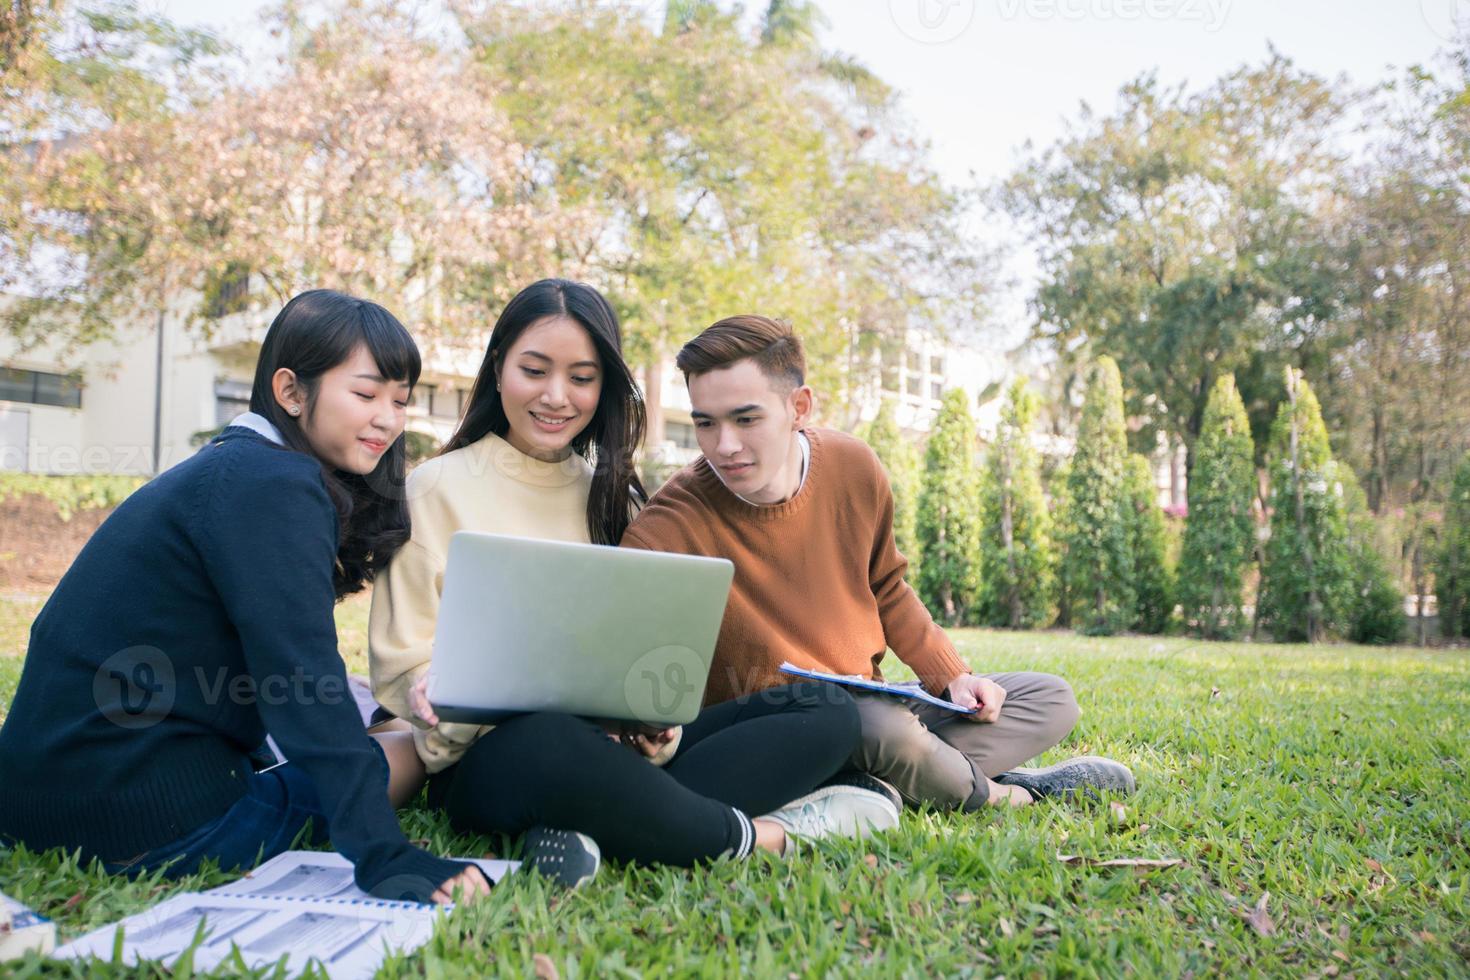 grupp universitetsstudenter asiatiska sitter på det gröna gräset och arbetar och läser utomhus tillsammans i en park foto